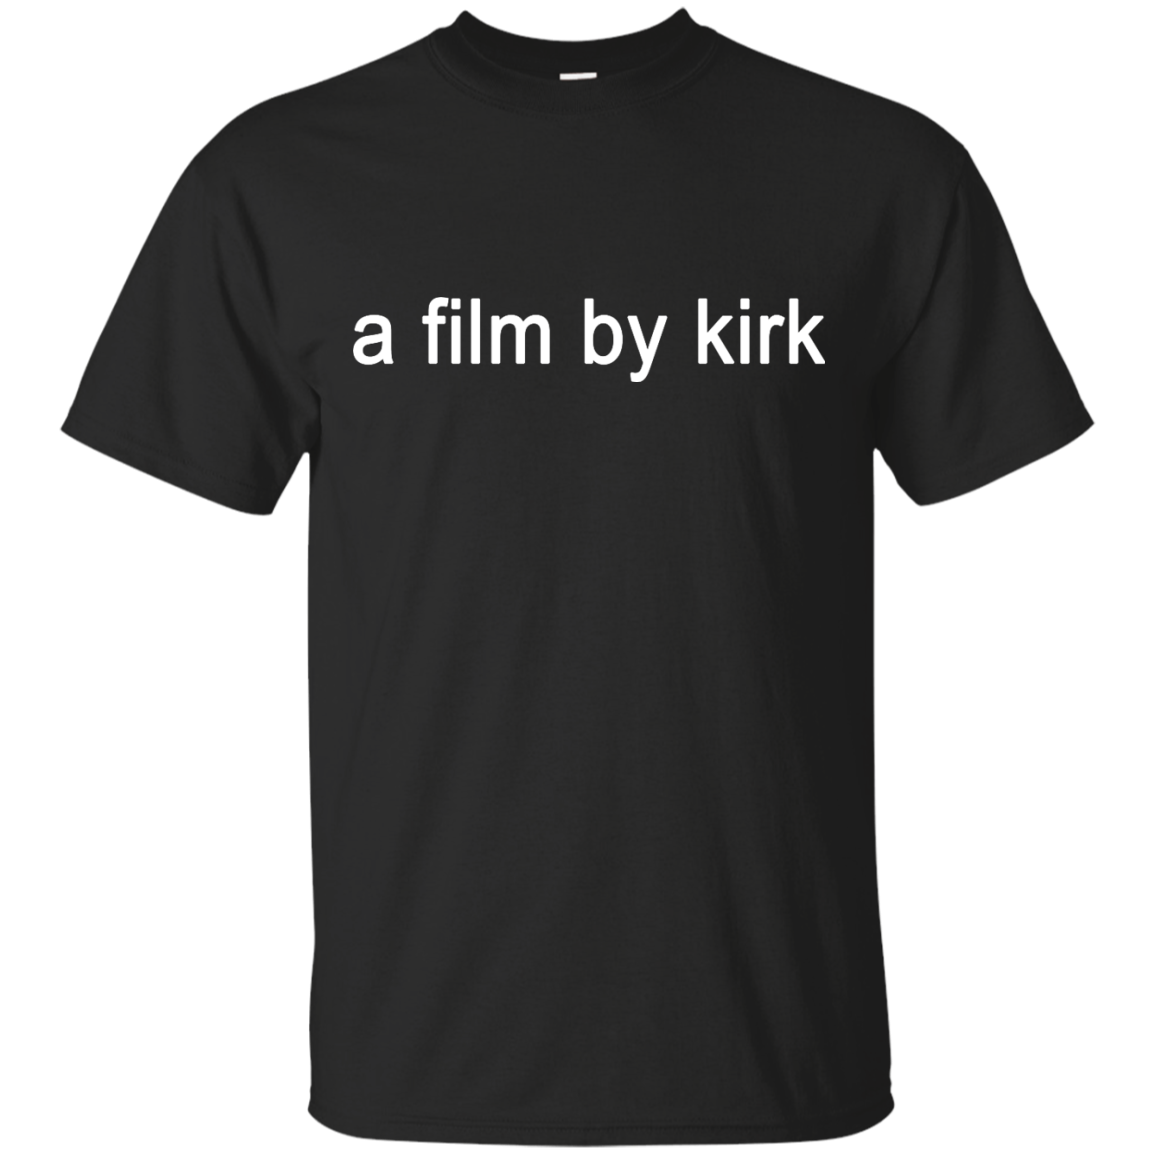 A film by kirk t-shirt, sweatshirt: #teamkirk gilmore girls